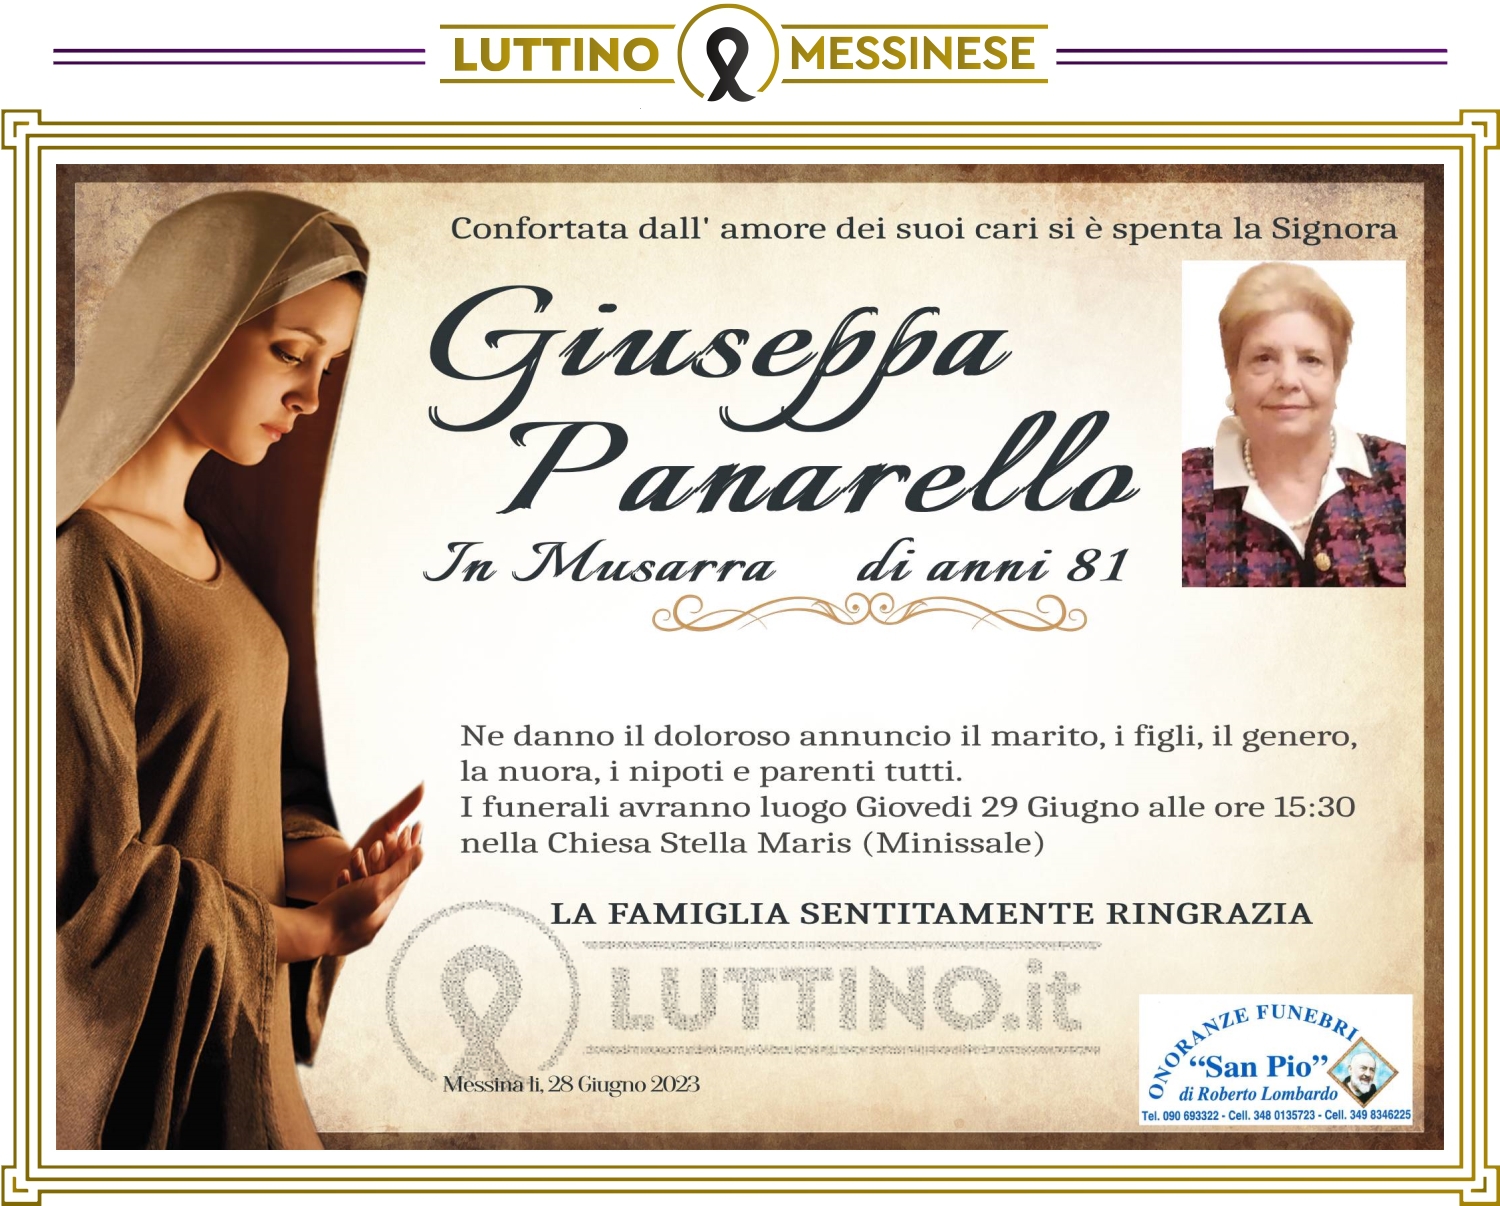 Giuseppa Panarello